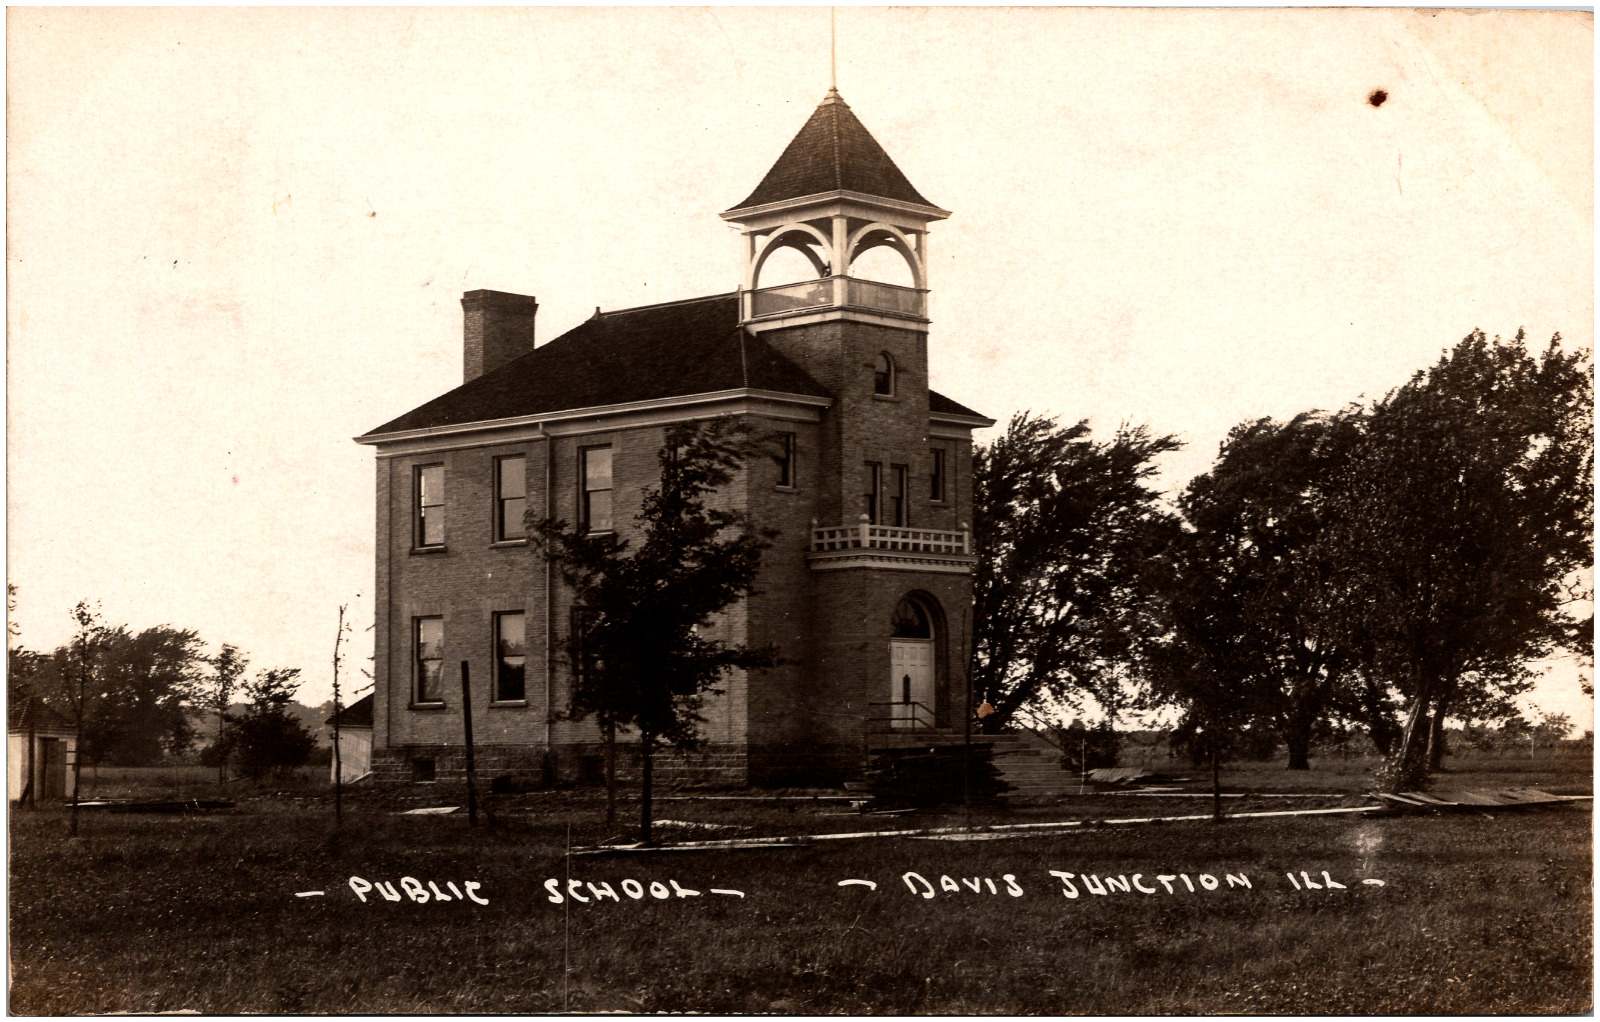 Public School Building in Davis Junction Illinois IL 1910s RPPC Postcard Photo